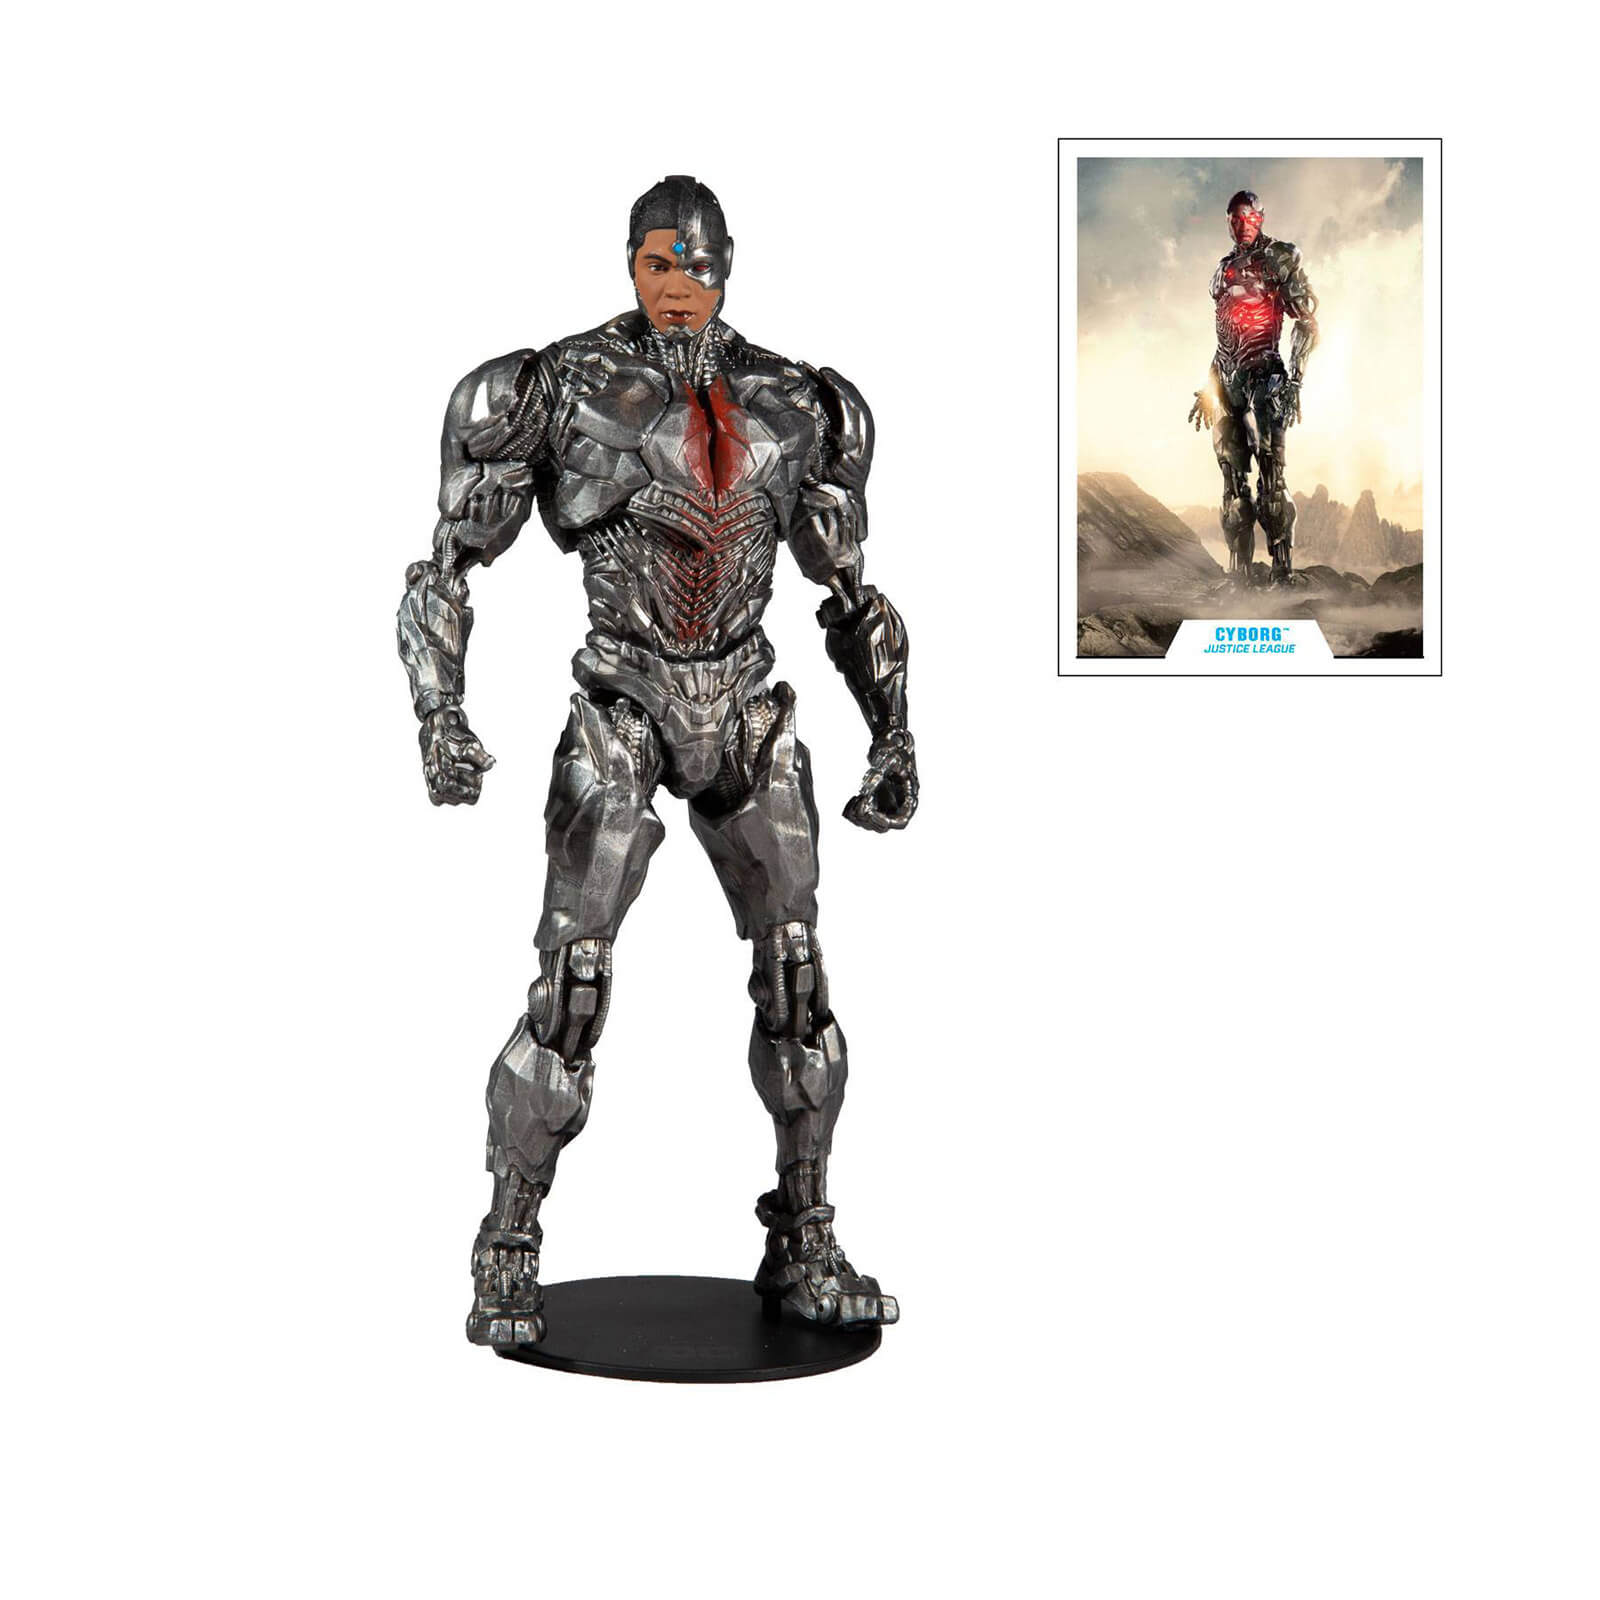 McFarlane DC Justice League Movie 7  Figures - Cyborg Action Figure